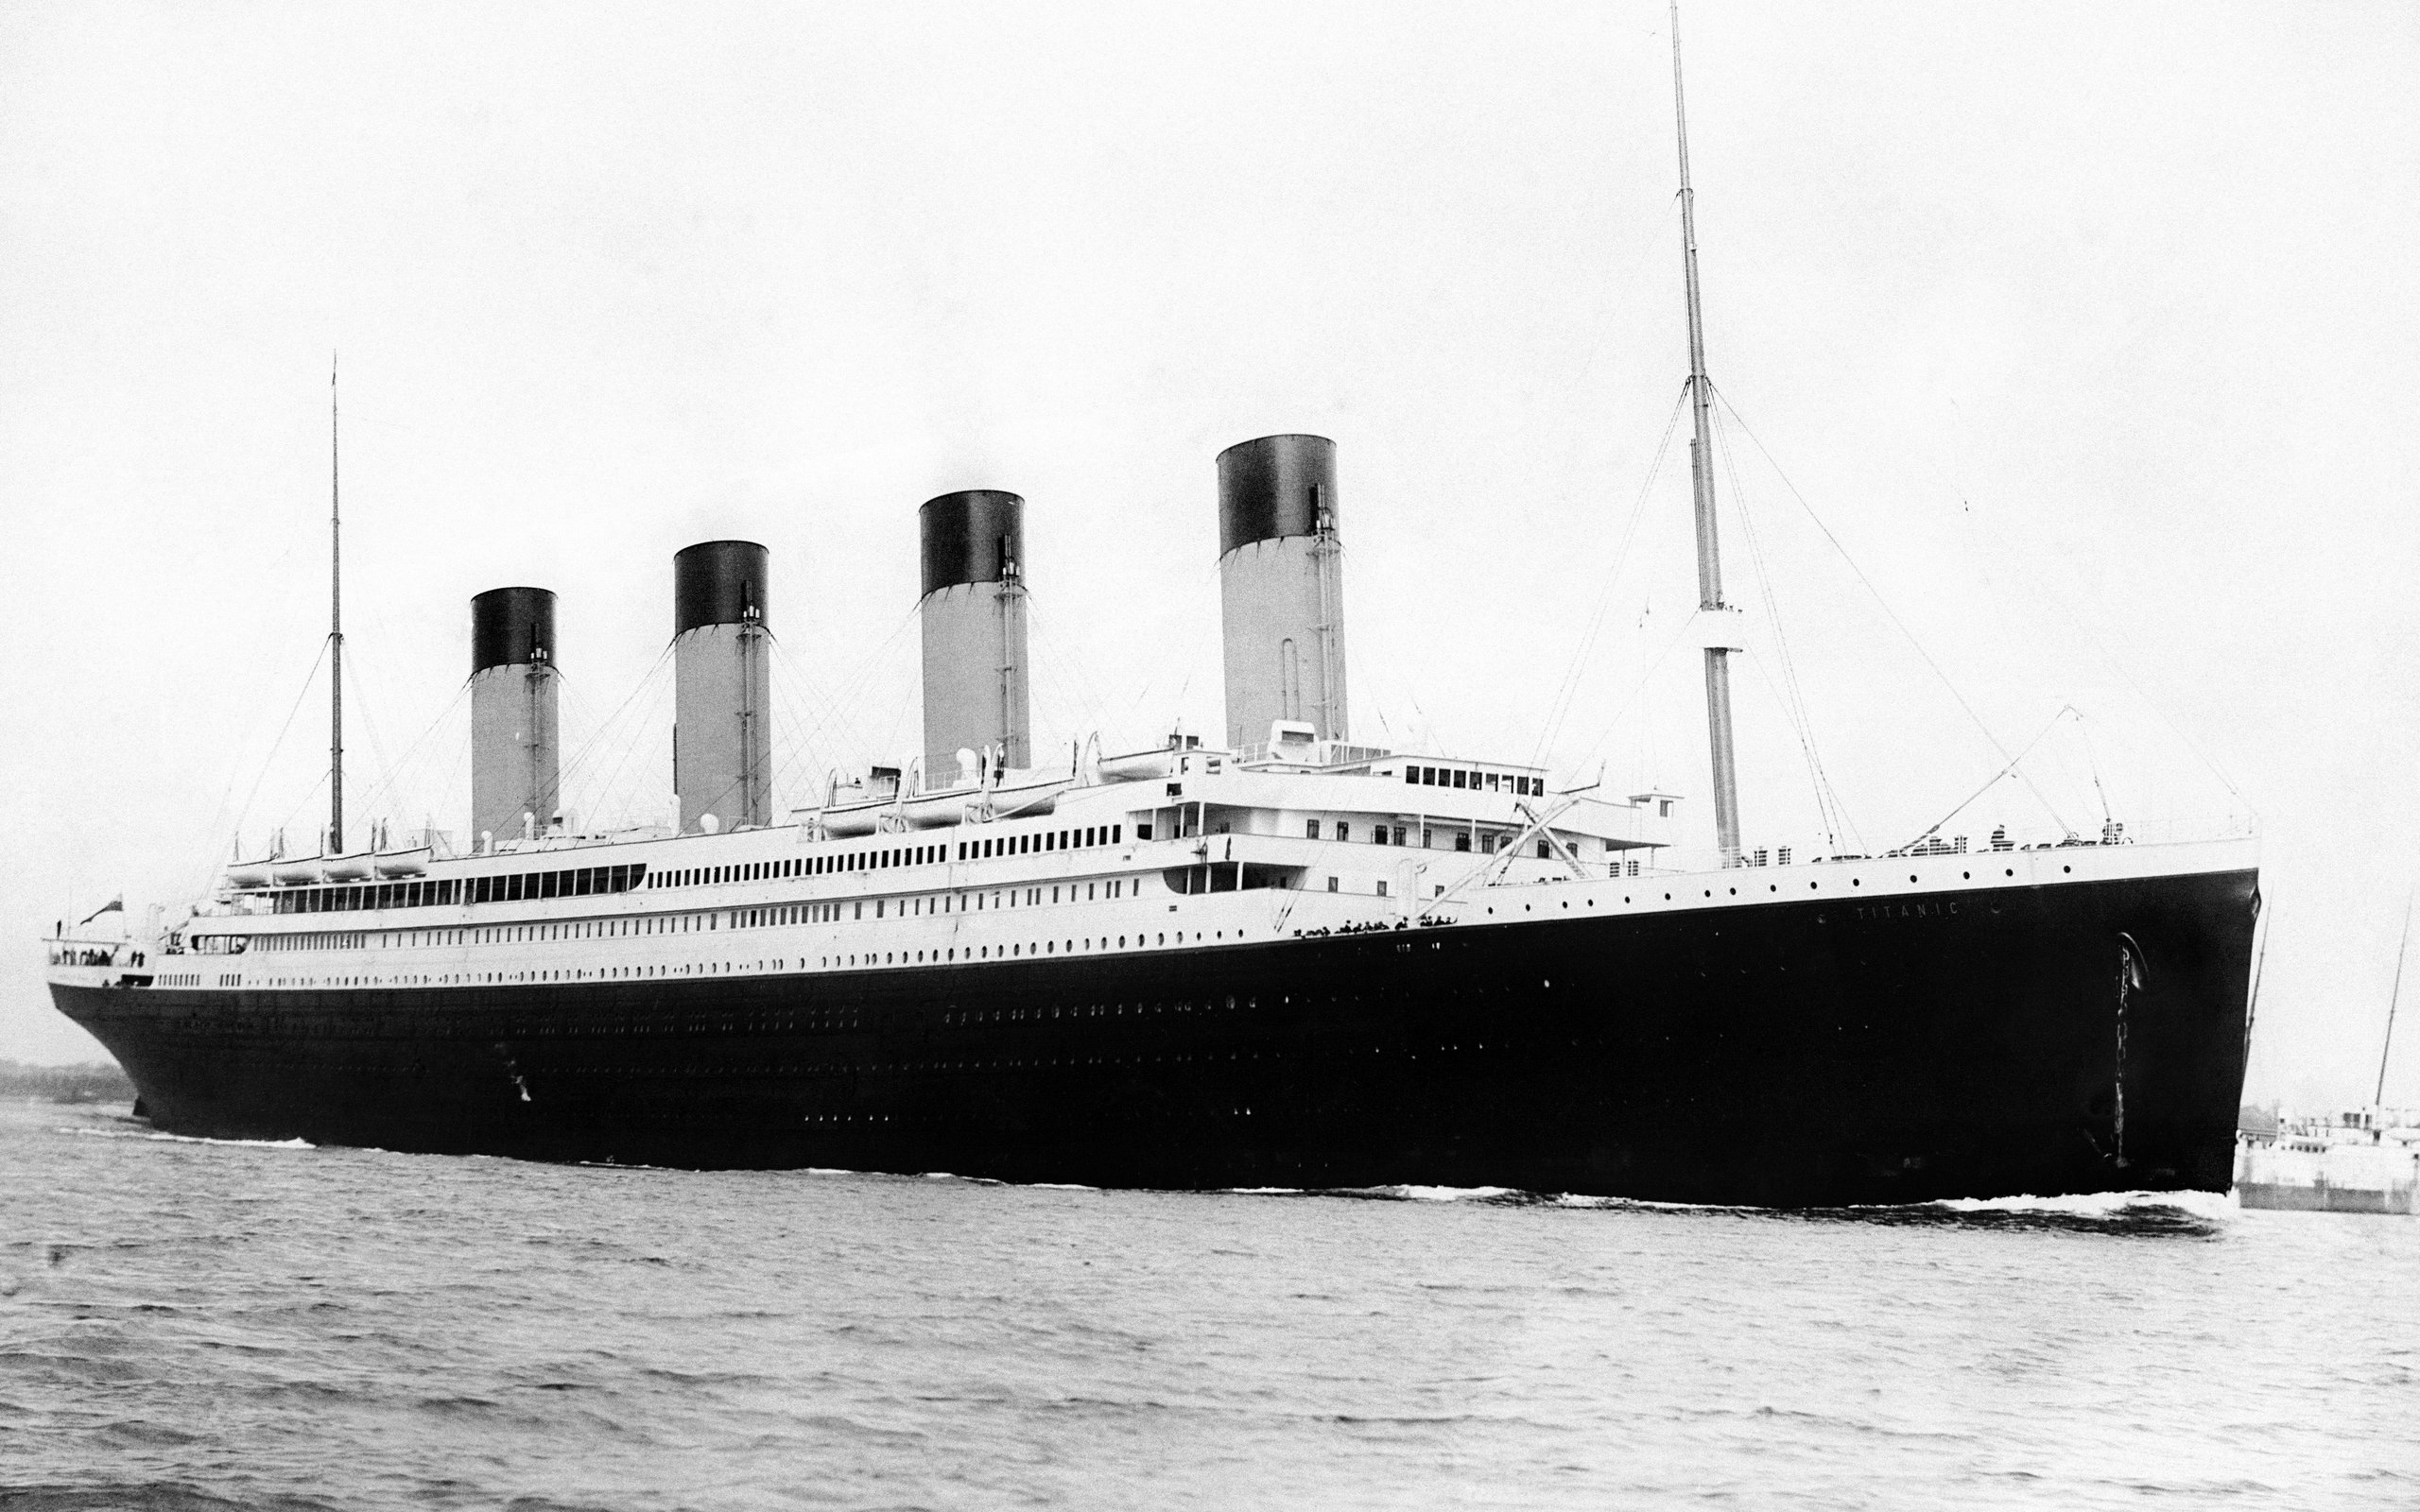 Titanic 2560x1600.  Tapeta, tapetka, wallpaper, pozadí, wallpaper na plochu